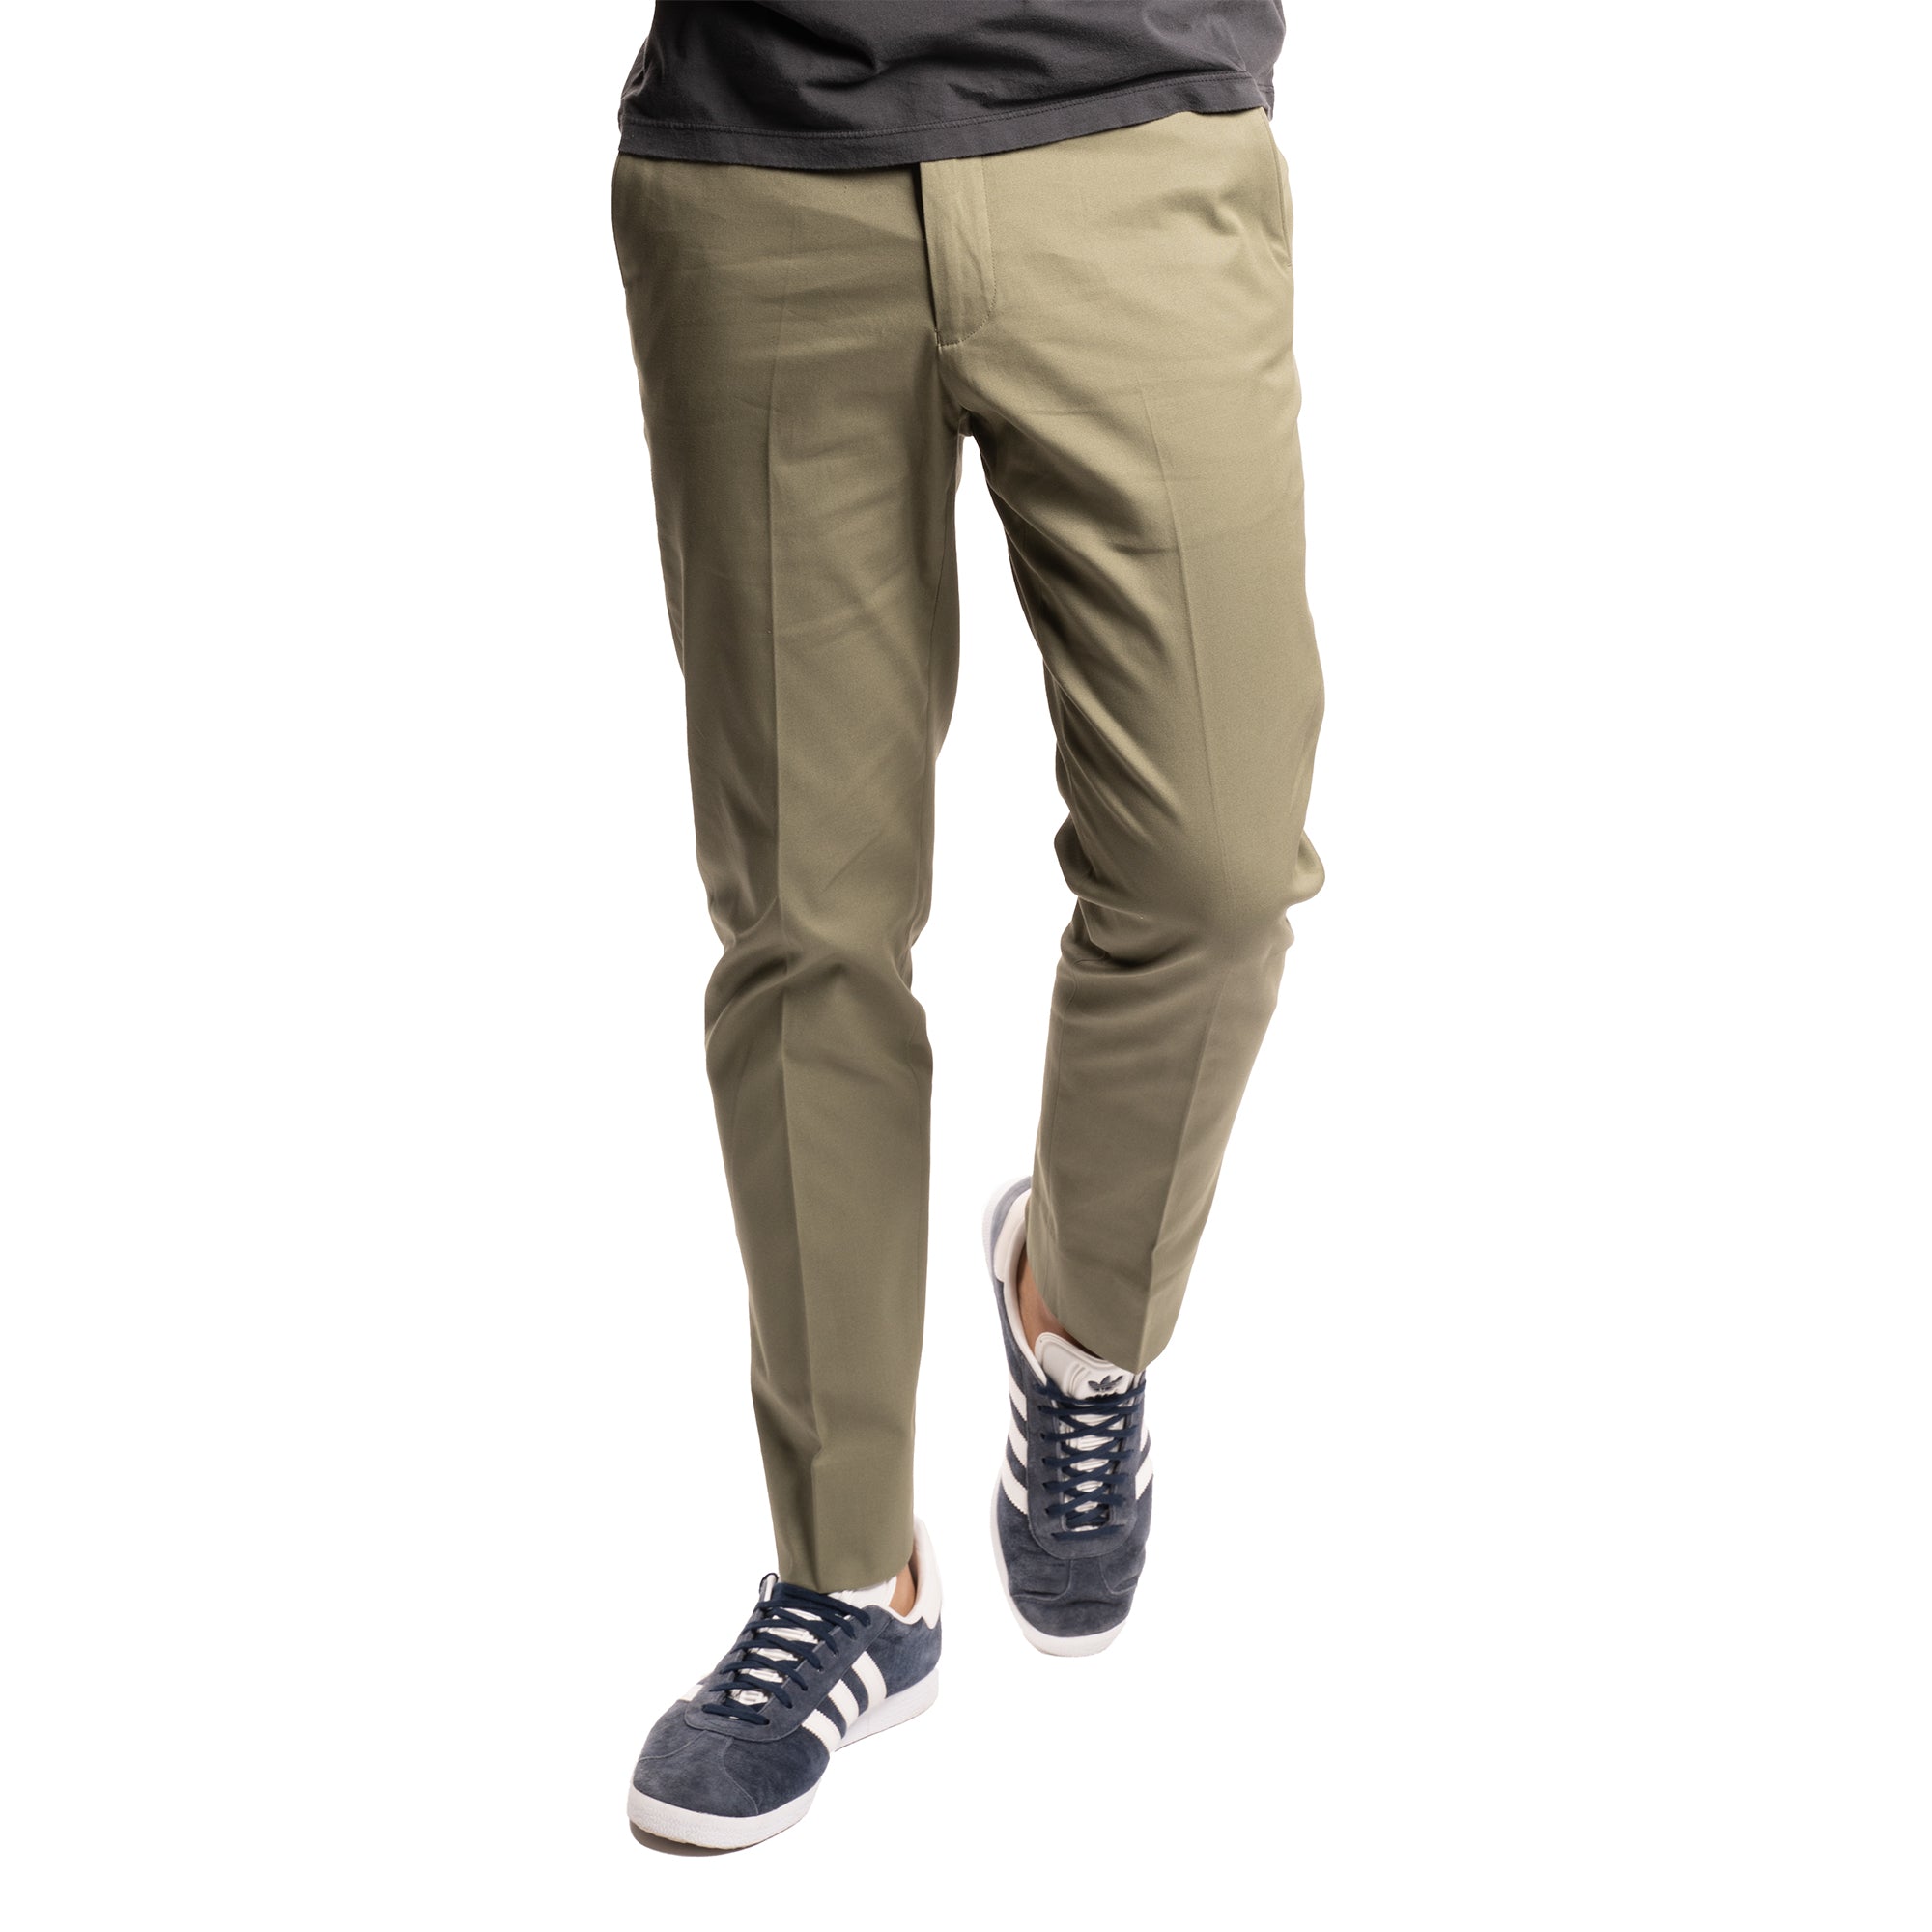 Dove Gray - Stretch Cotton Trouser For Men